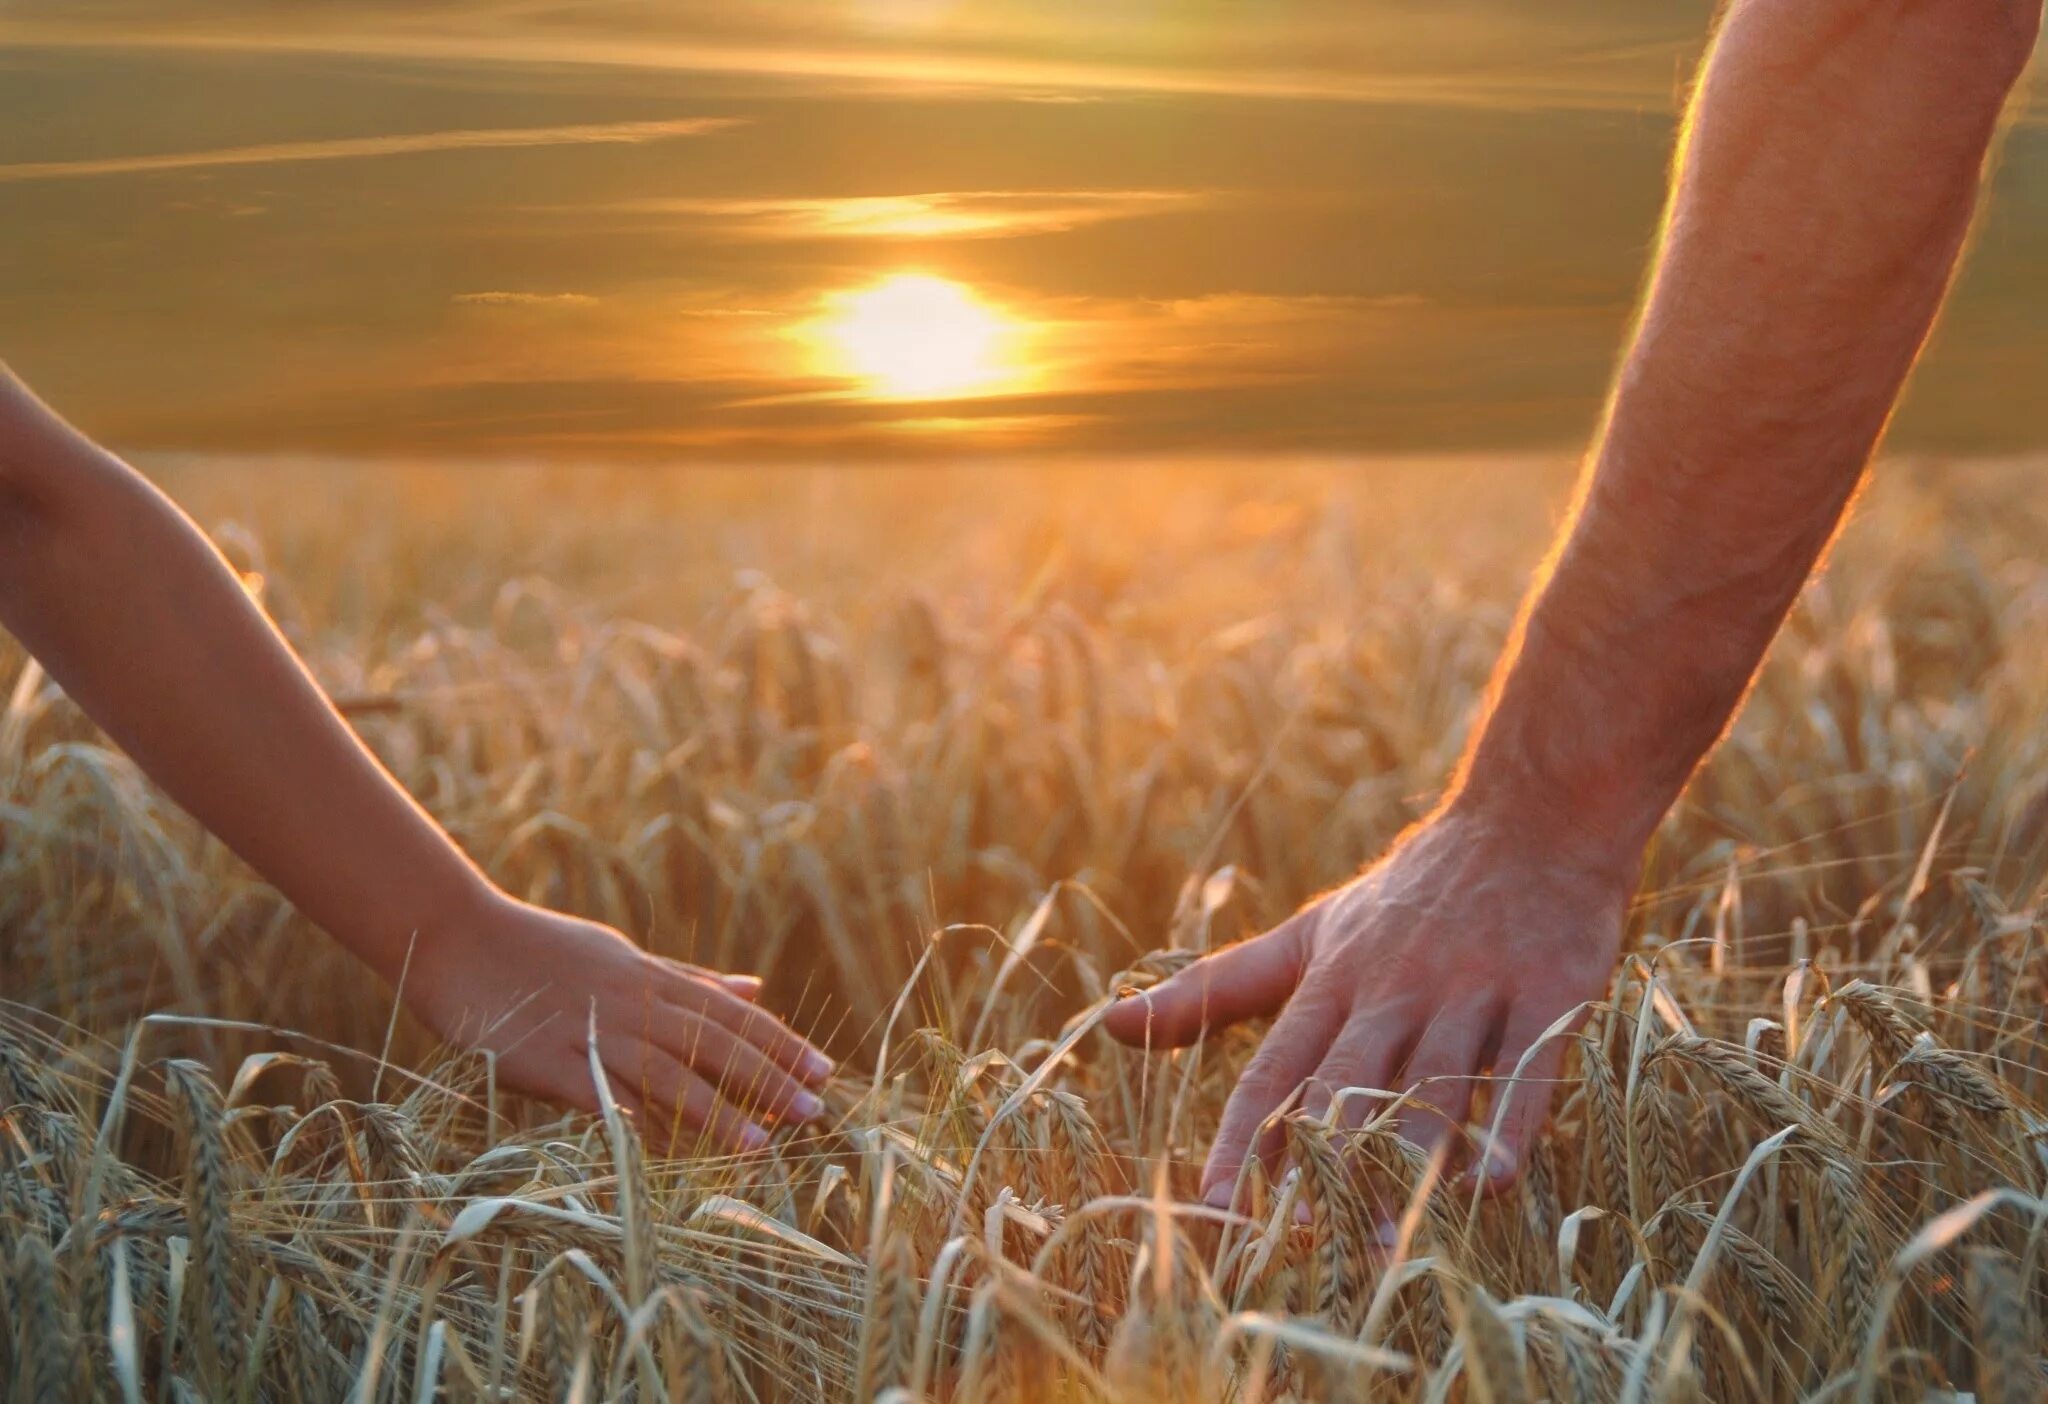 Будь то он. Берегите друг друга. Пшеничное поле человек. Берегите друг друга любите. Любите цените и берегите друг друга.